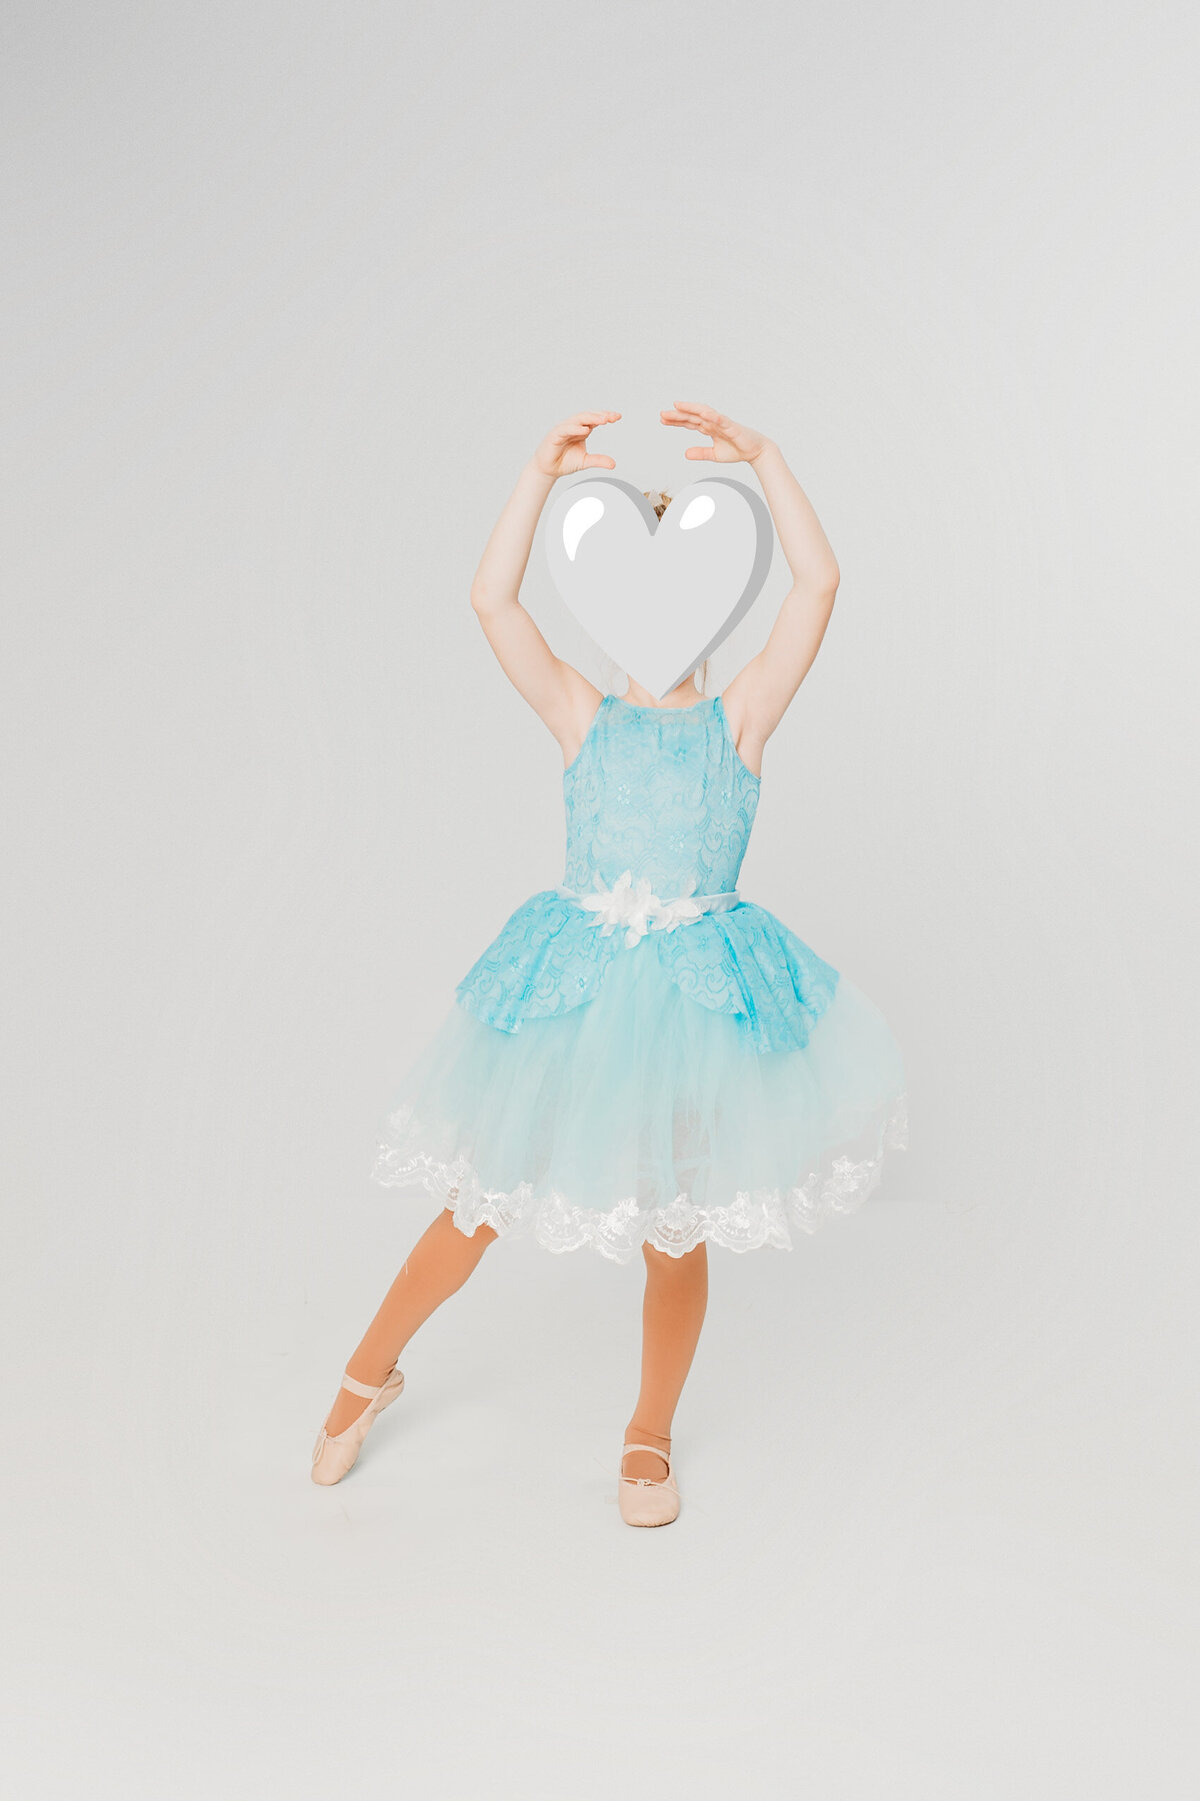 Ballet 1-Prickel Hazel-5375